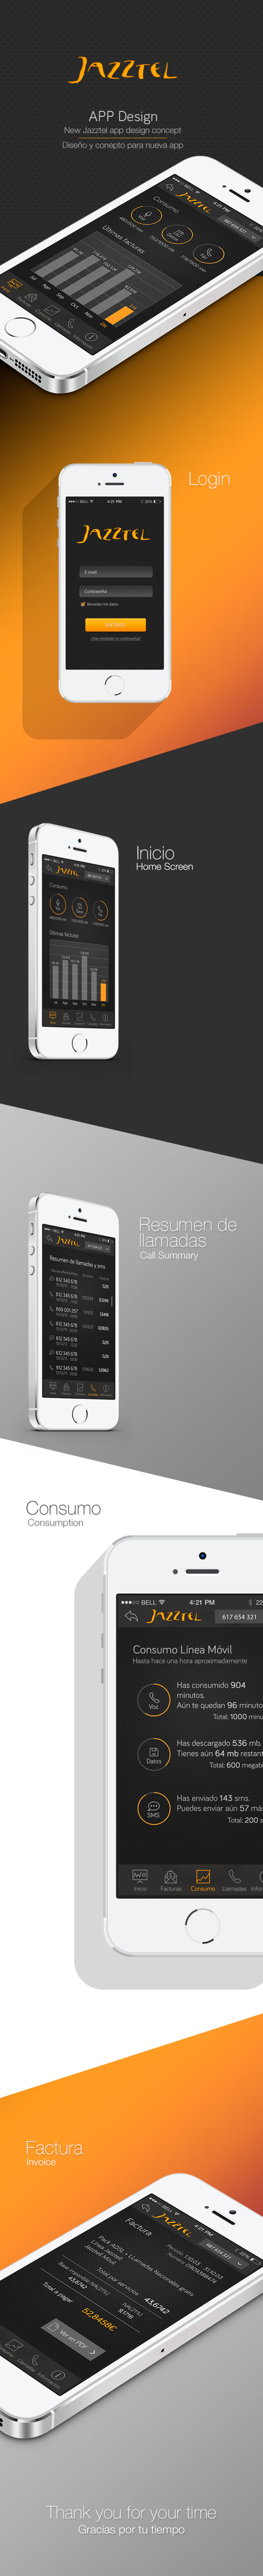 Diseño App de Jazztel 0